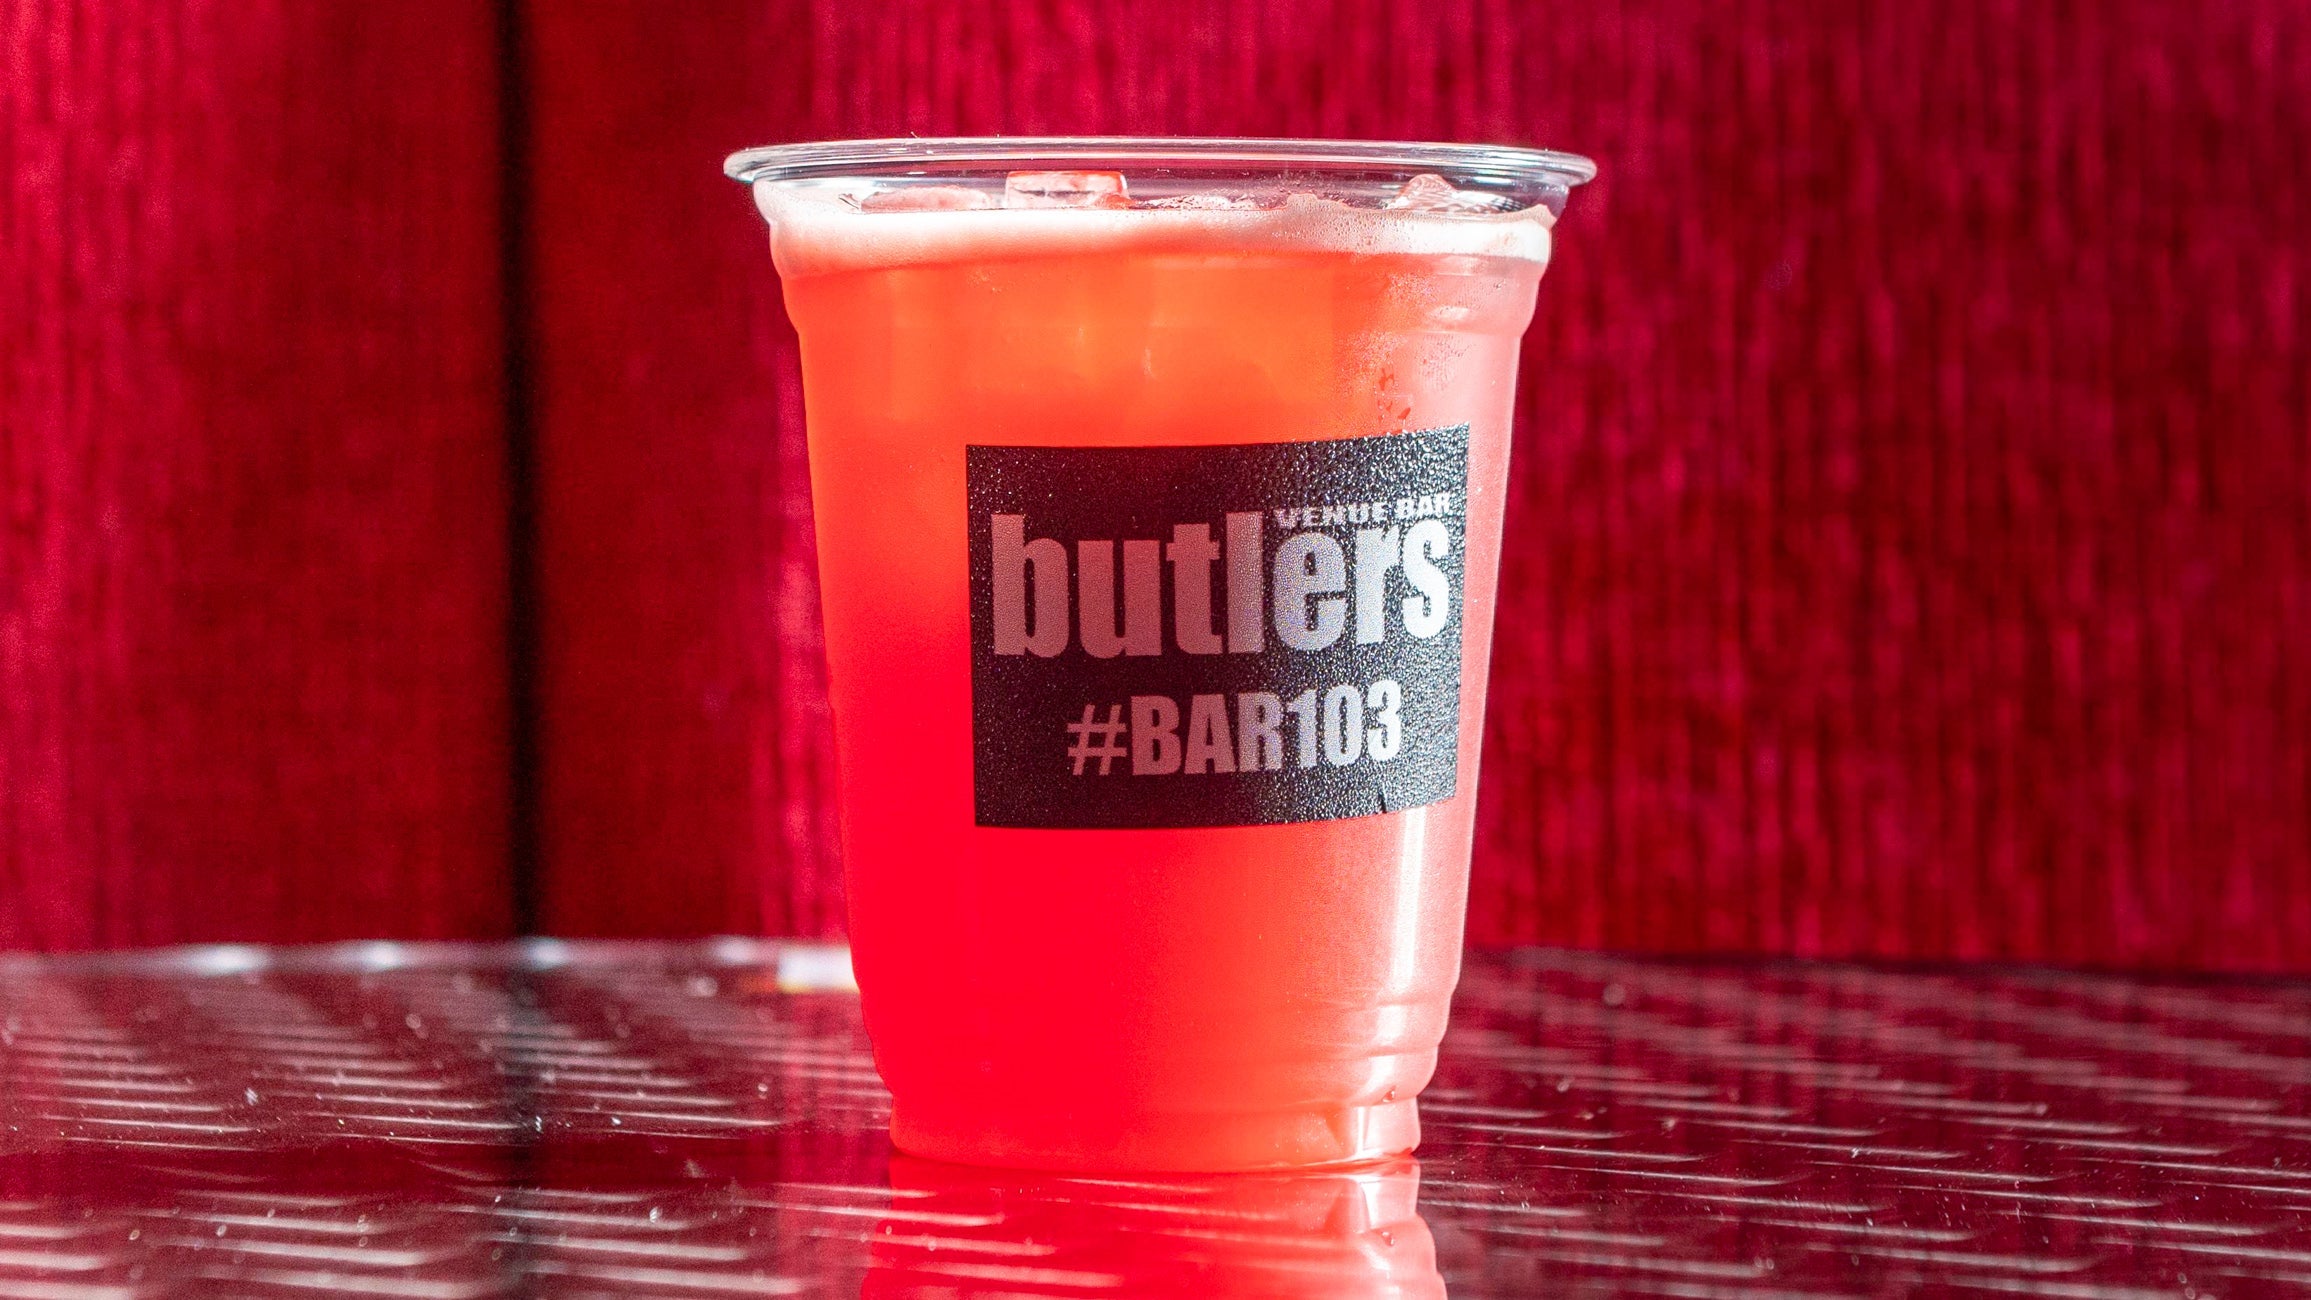 Butlers Bar 103